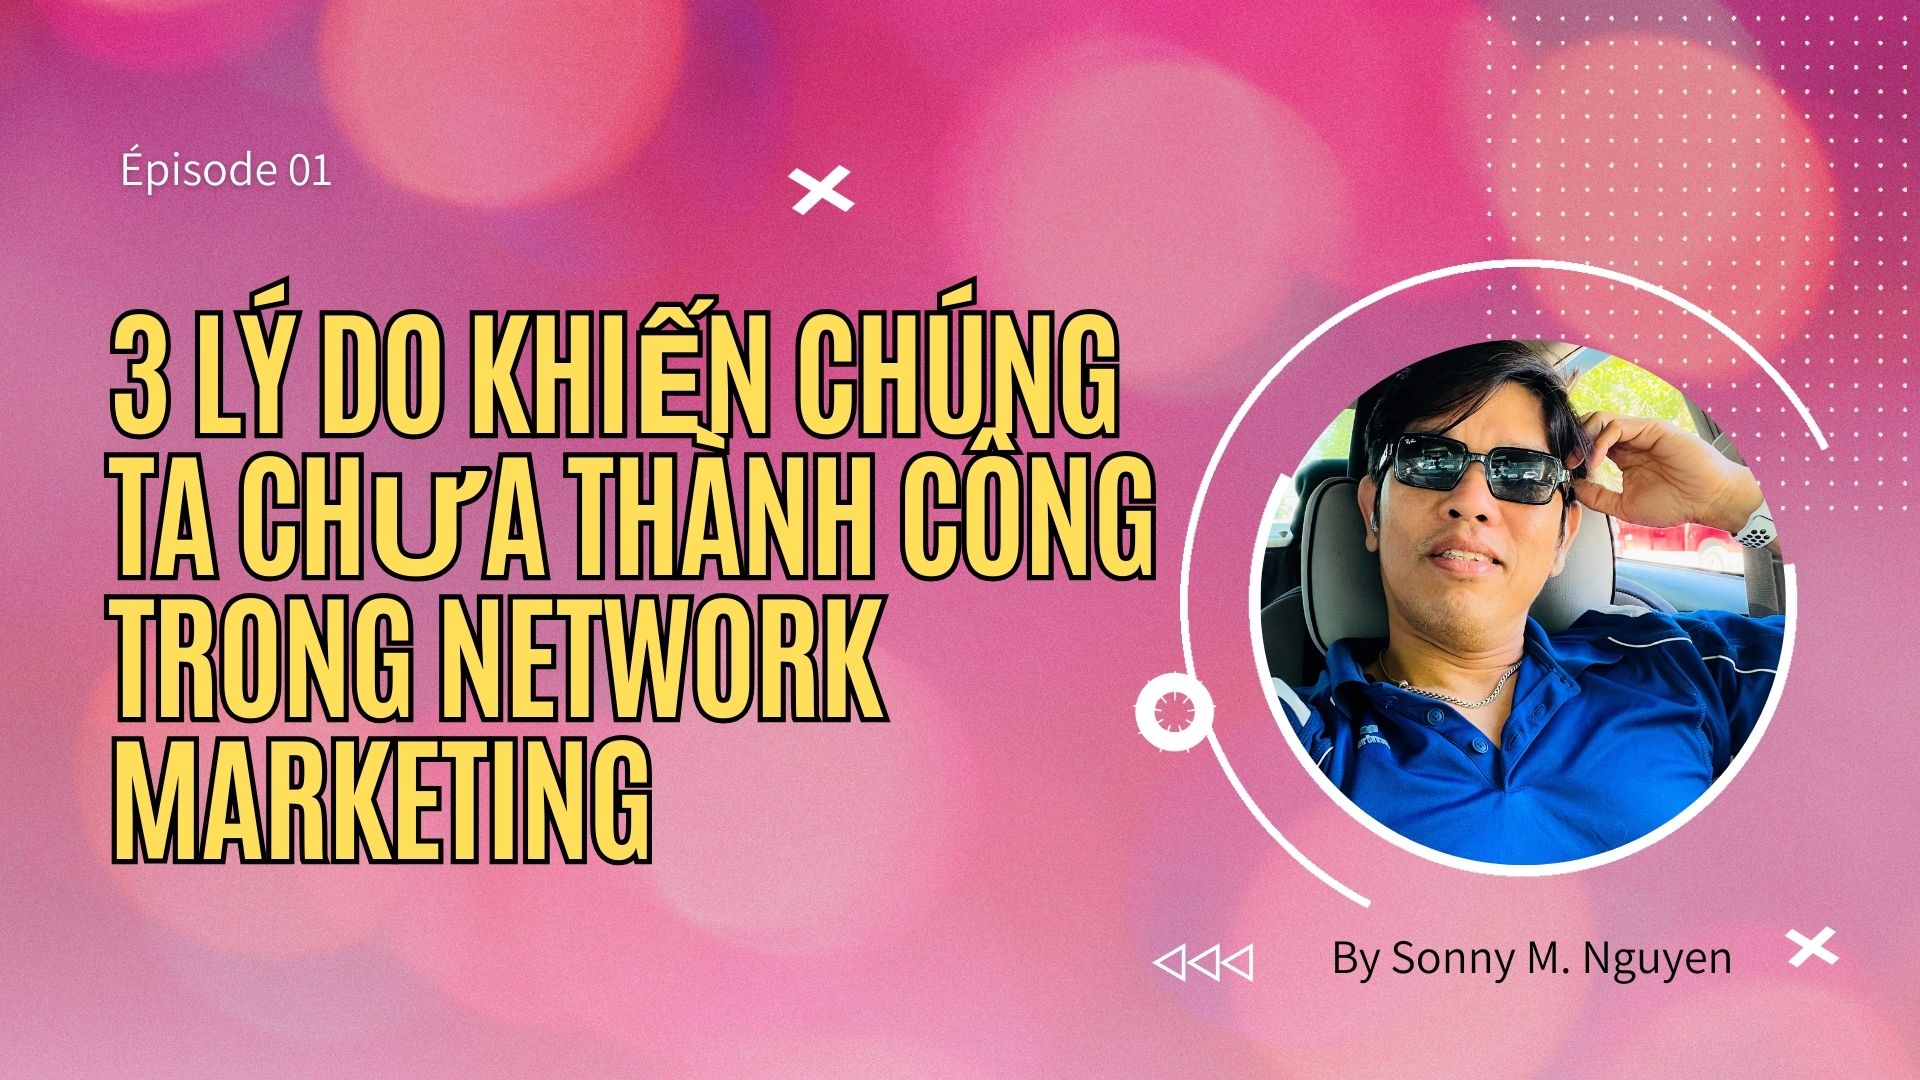 3 LÝ DO KHIẾN CHÚNG TA CHƯA THÀNH CÔNG TRONG TRONG KD NETWORK MARKETING